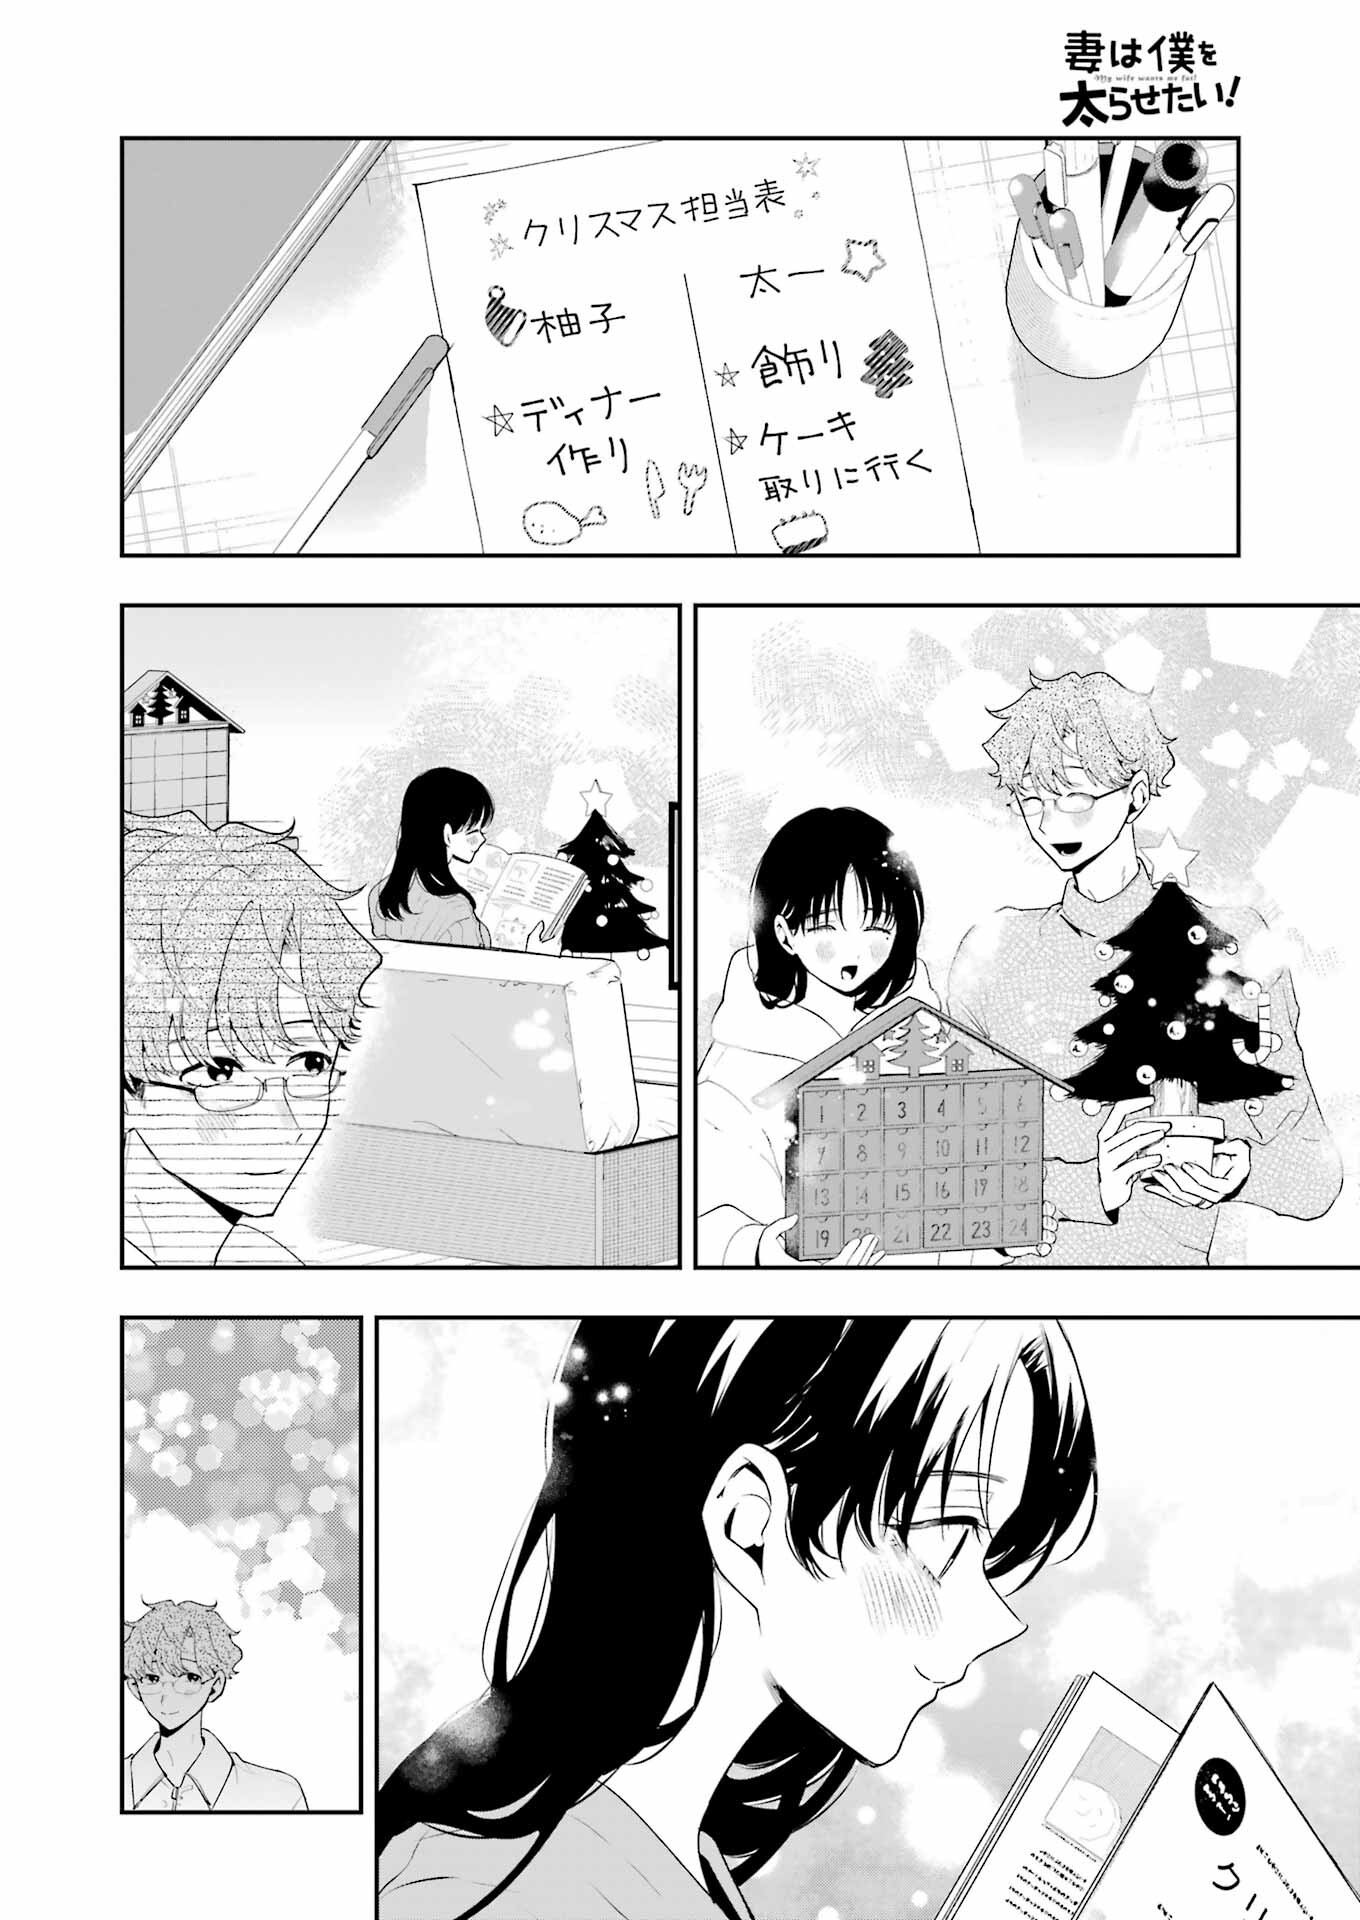 Tsuma wa Boku wo Futorasetai! - Chapter 18 - Page 4